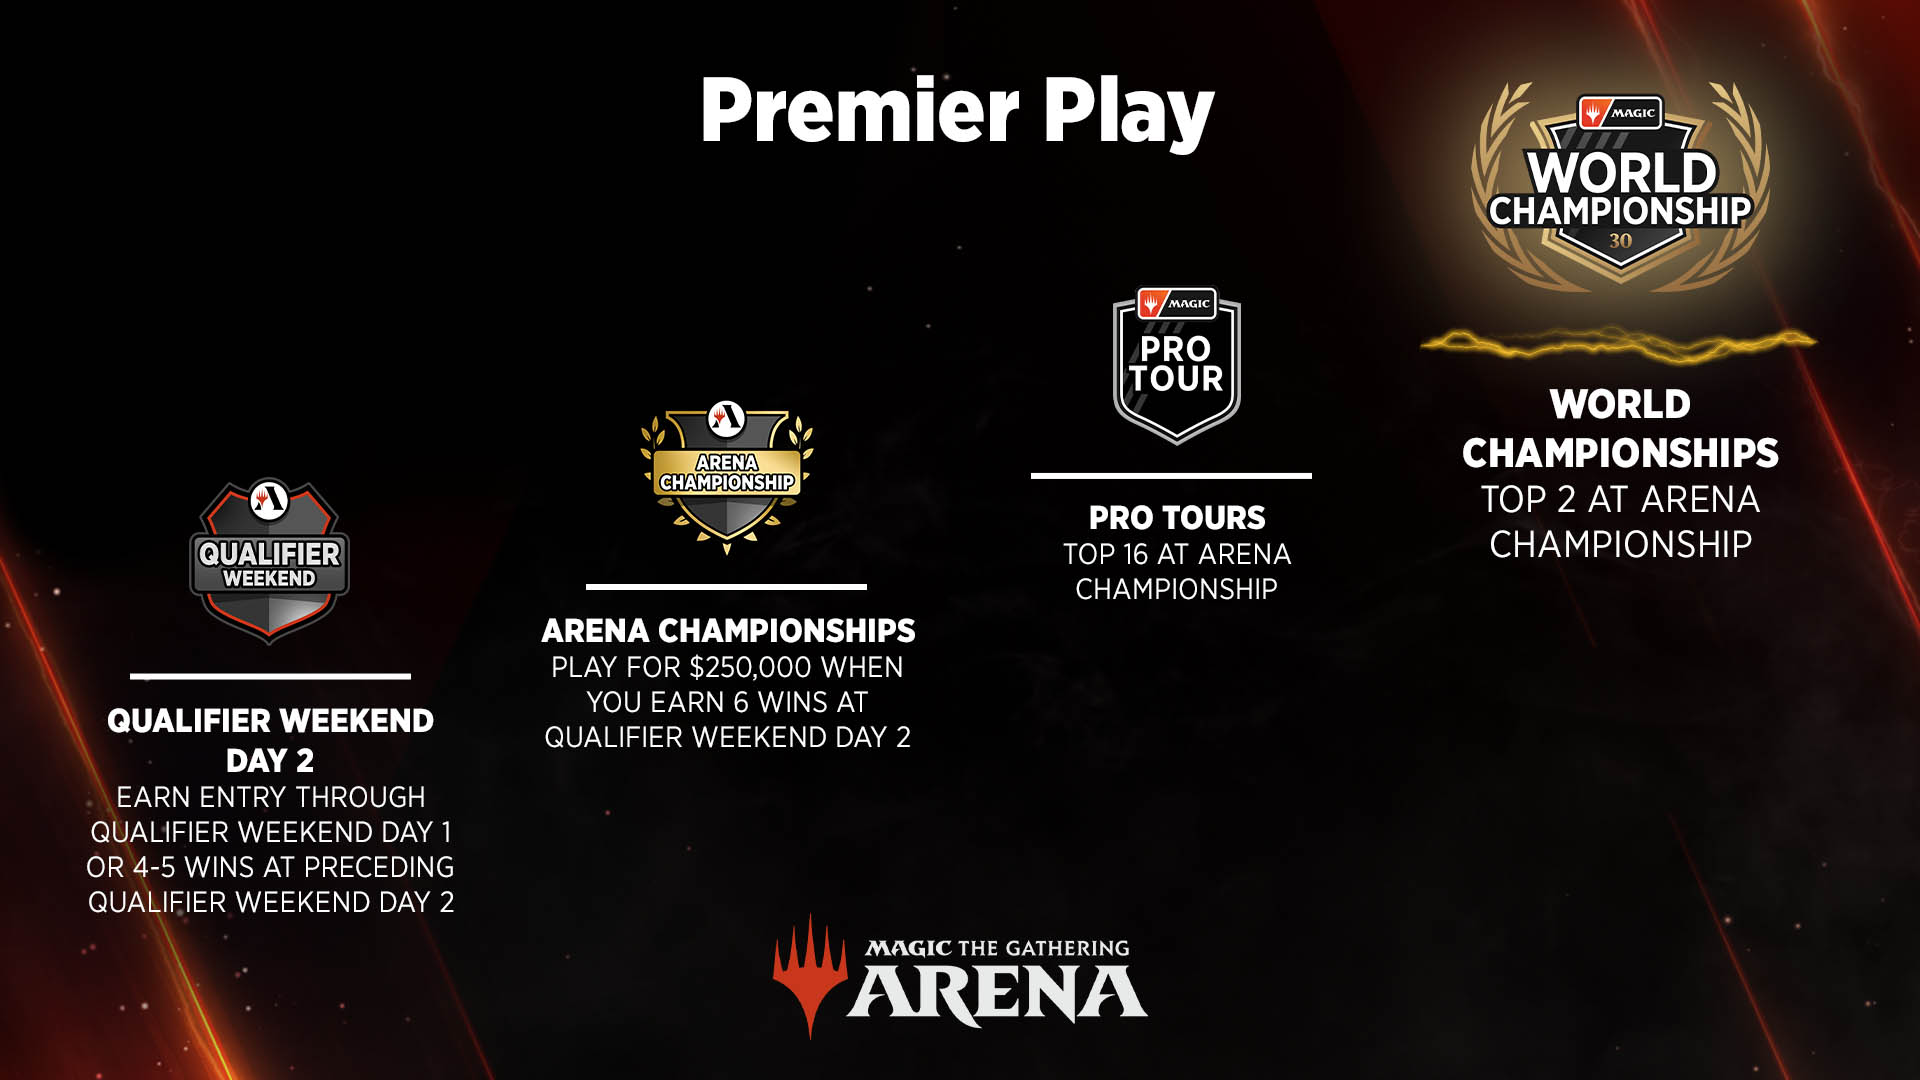 Der Premier Play Weg von Tag 2 des Qualifier-Wochenendes zu Pro Tours bis ganz nach oben zur Magic World Championship